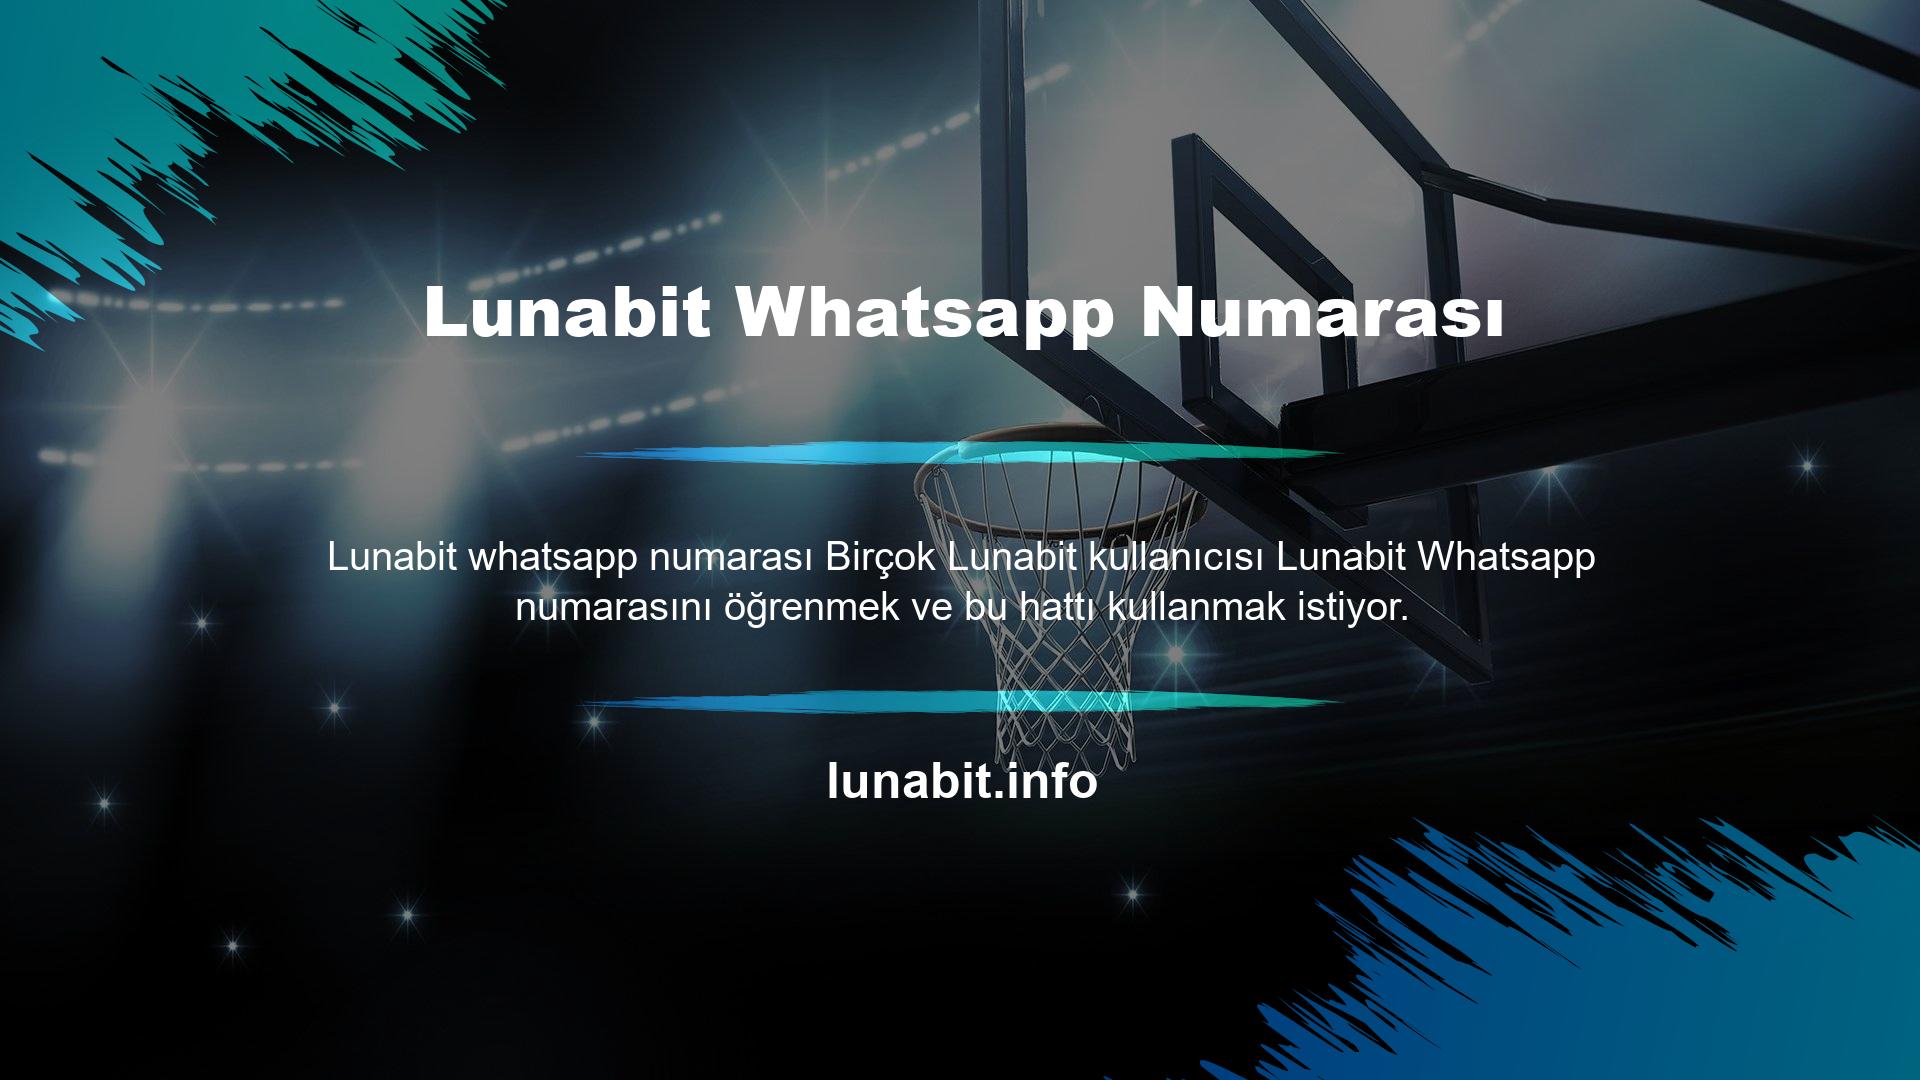 Bu kullanıcıların Lunabit Whatsapp numaralarını bulduk ve sizlerle paylaşmaya karar verdik